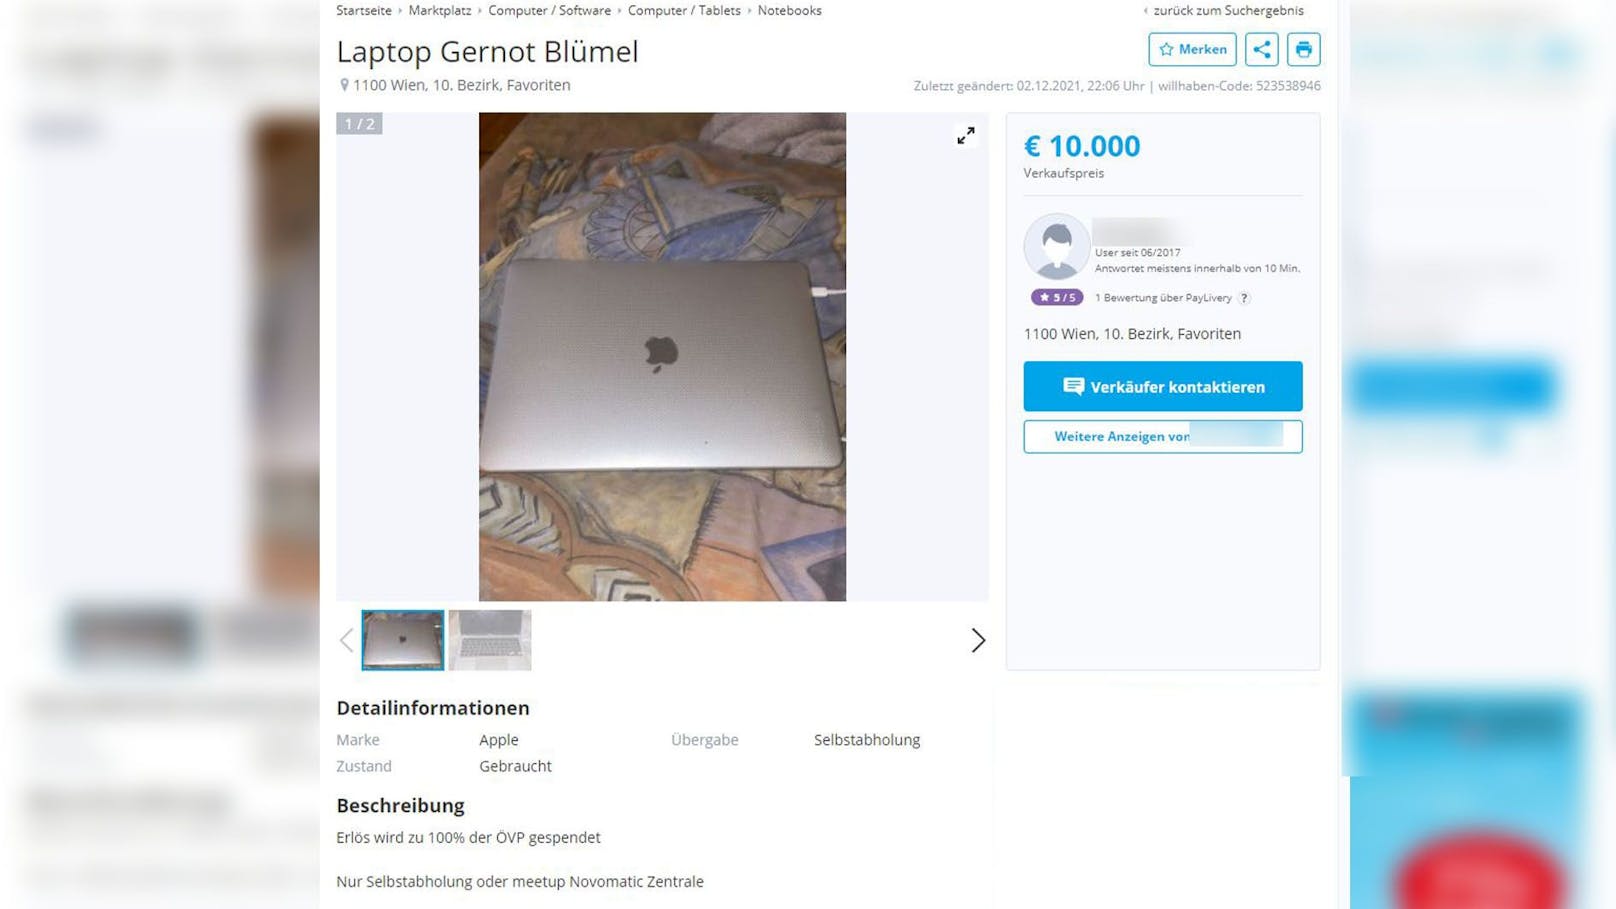 Willhaben-User verkauft "Blümels Laptop" um 10.000 Euro